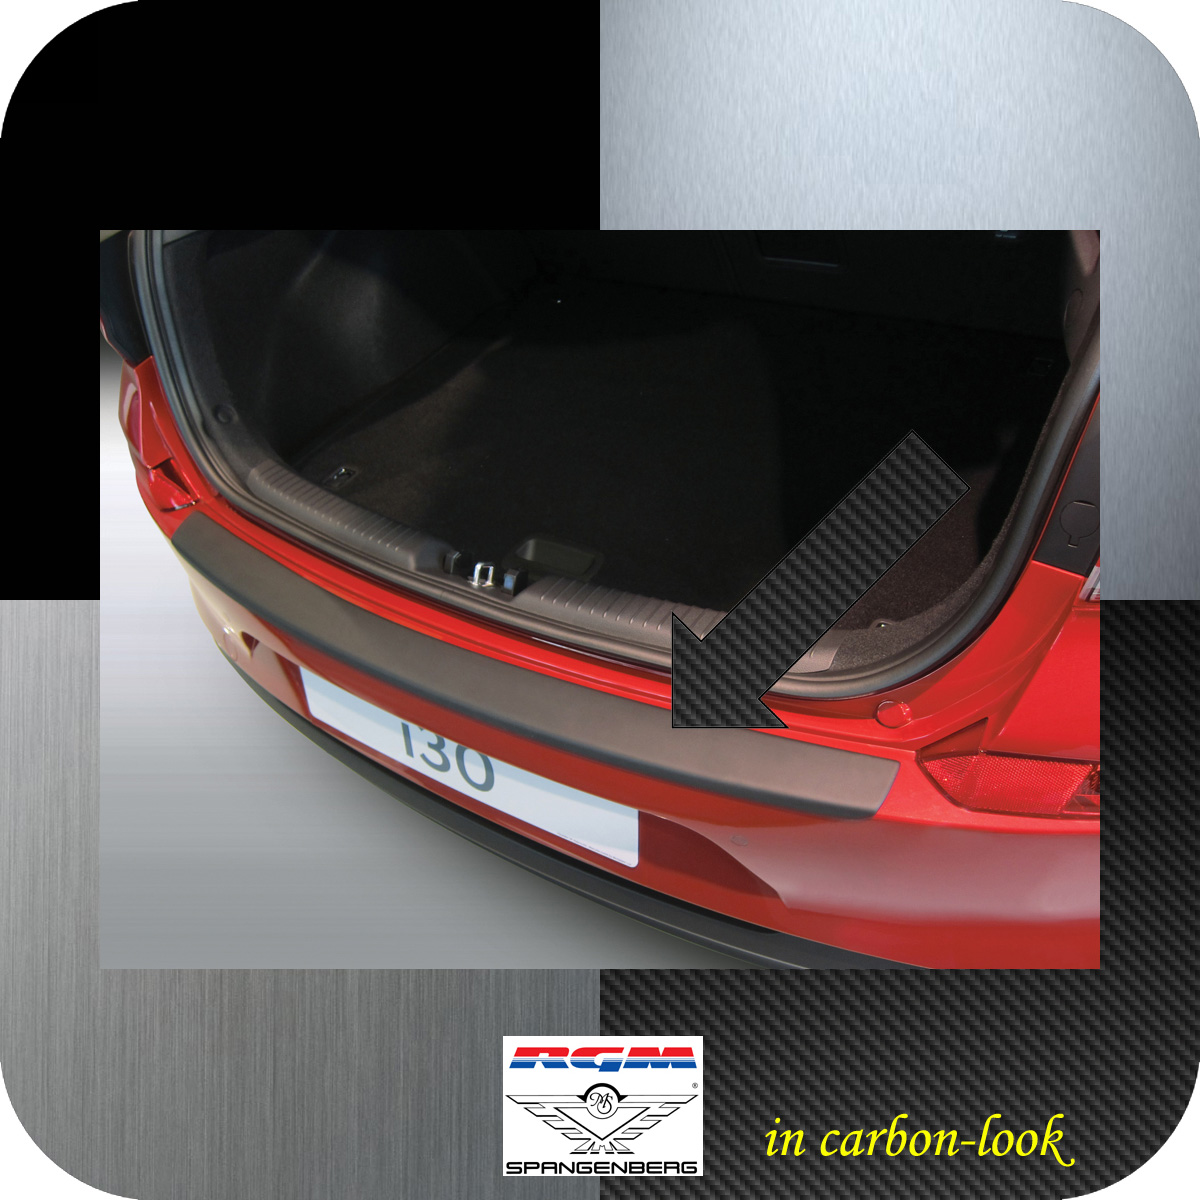 Ladekantenschutz Carbon-Look Hyundai i30 5-Türer ab Baujahr 2017- 3509980